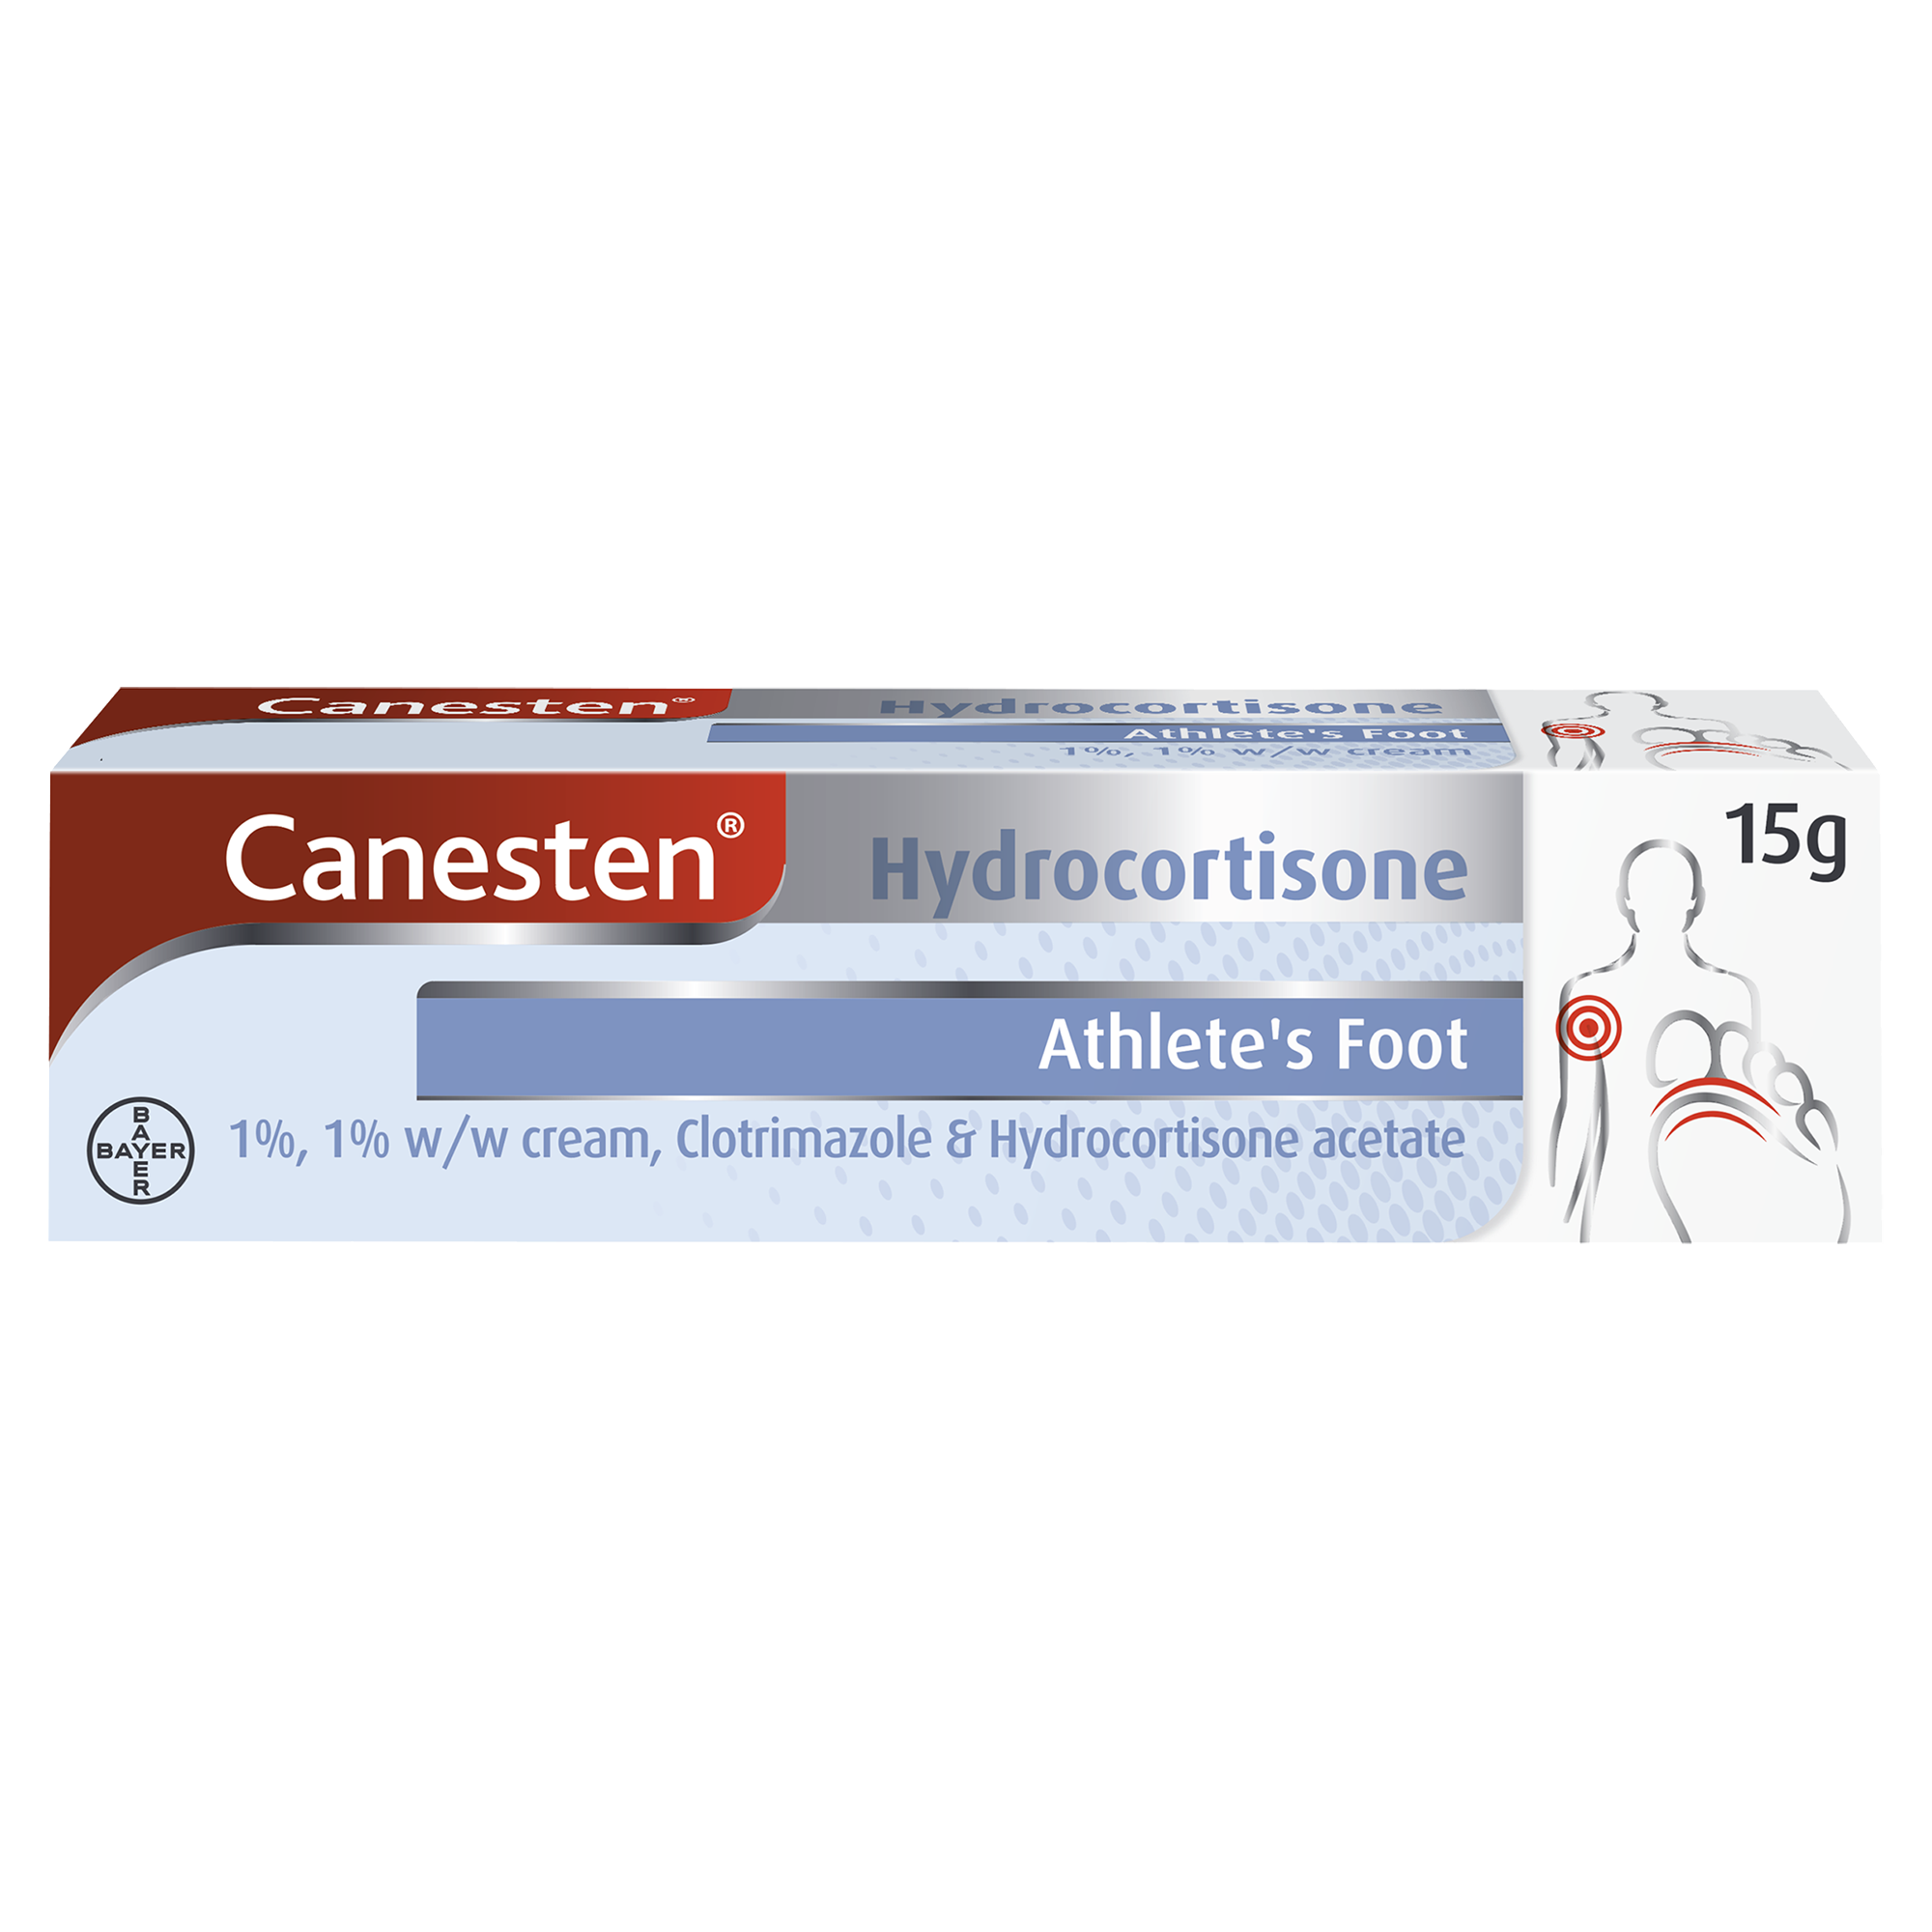 Canesten Hydrocortisone Athlete’s Foot 1% w/w Cream